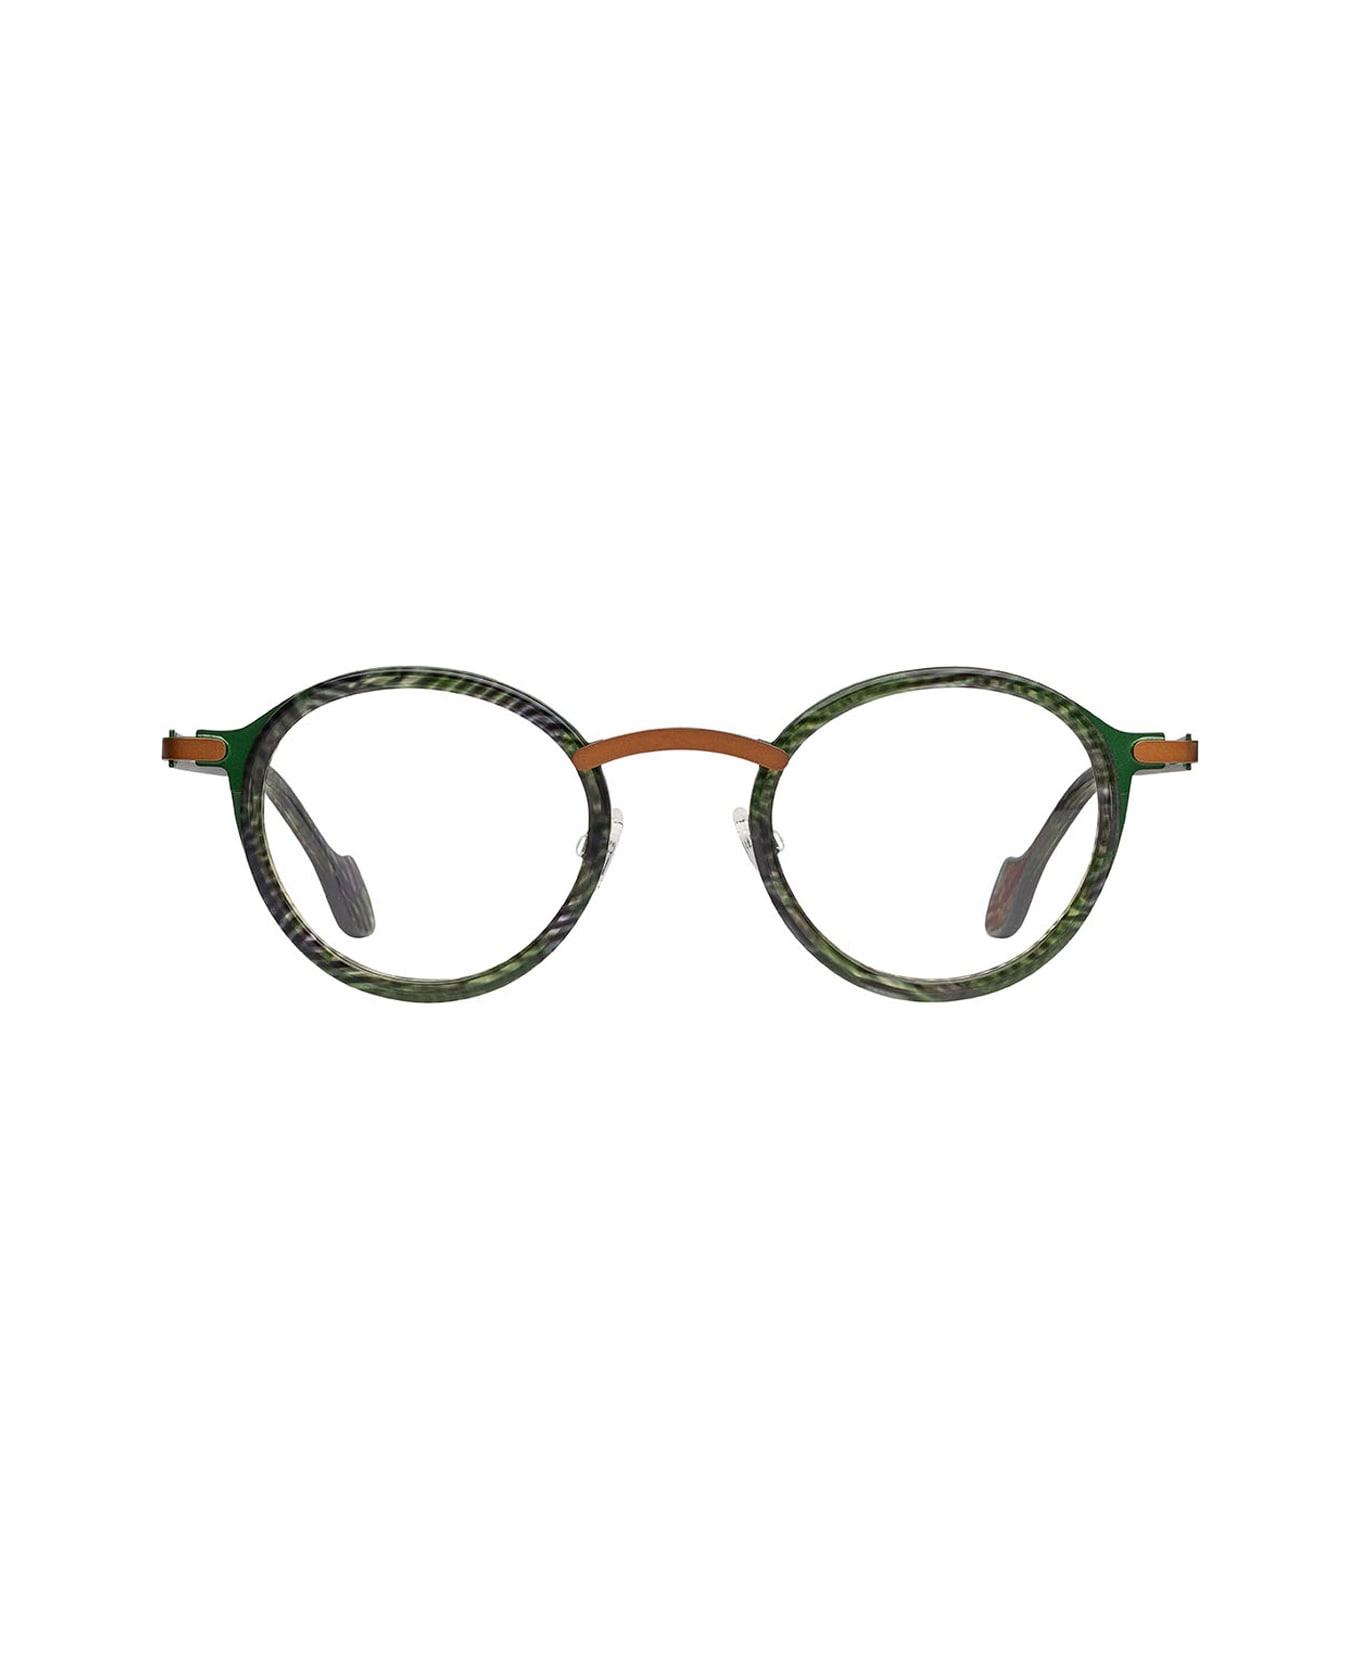 Matttew Waza 74 Glasses - Verde